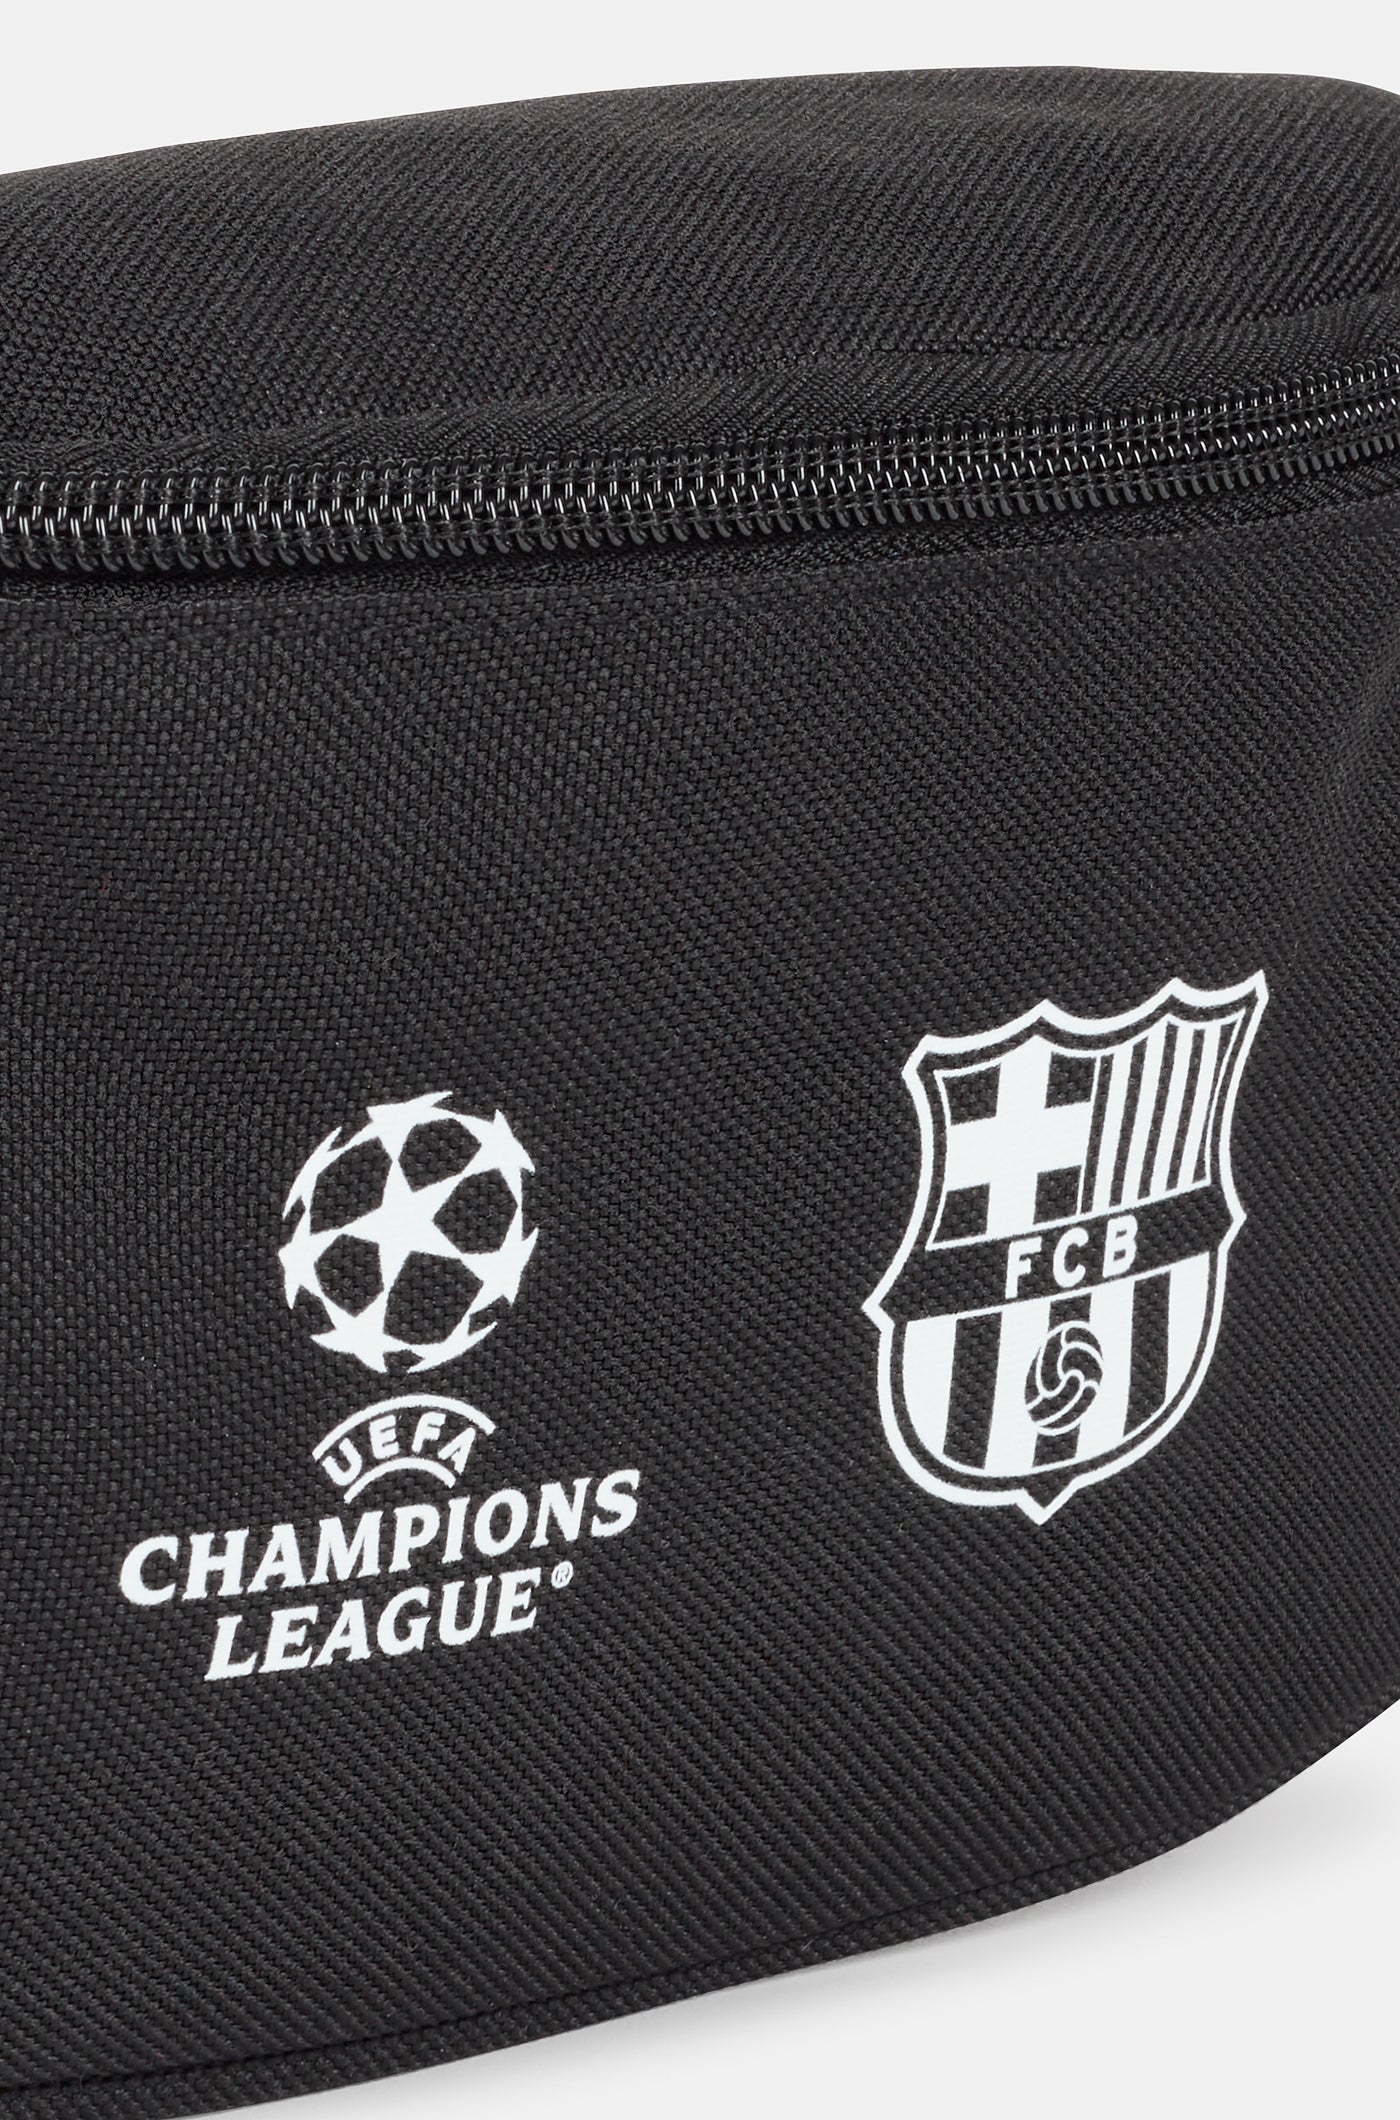 Ronyonera amb l'escut de la UEFA Champions League